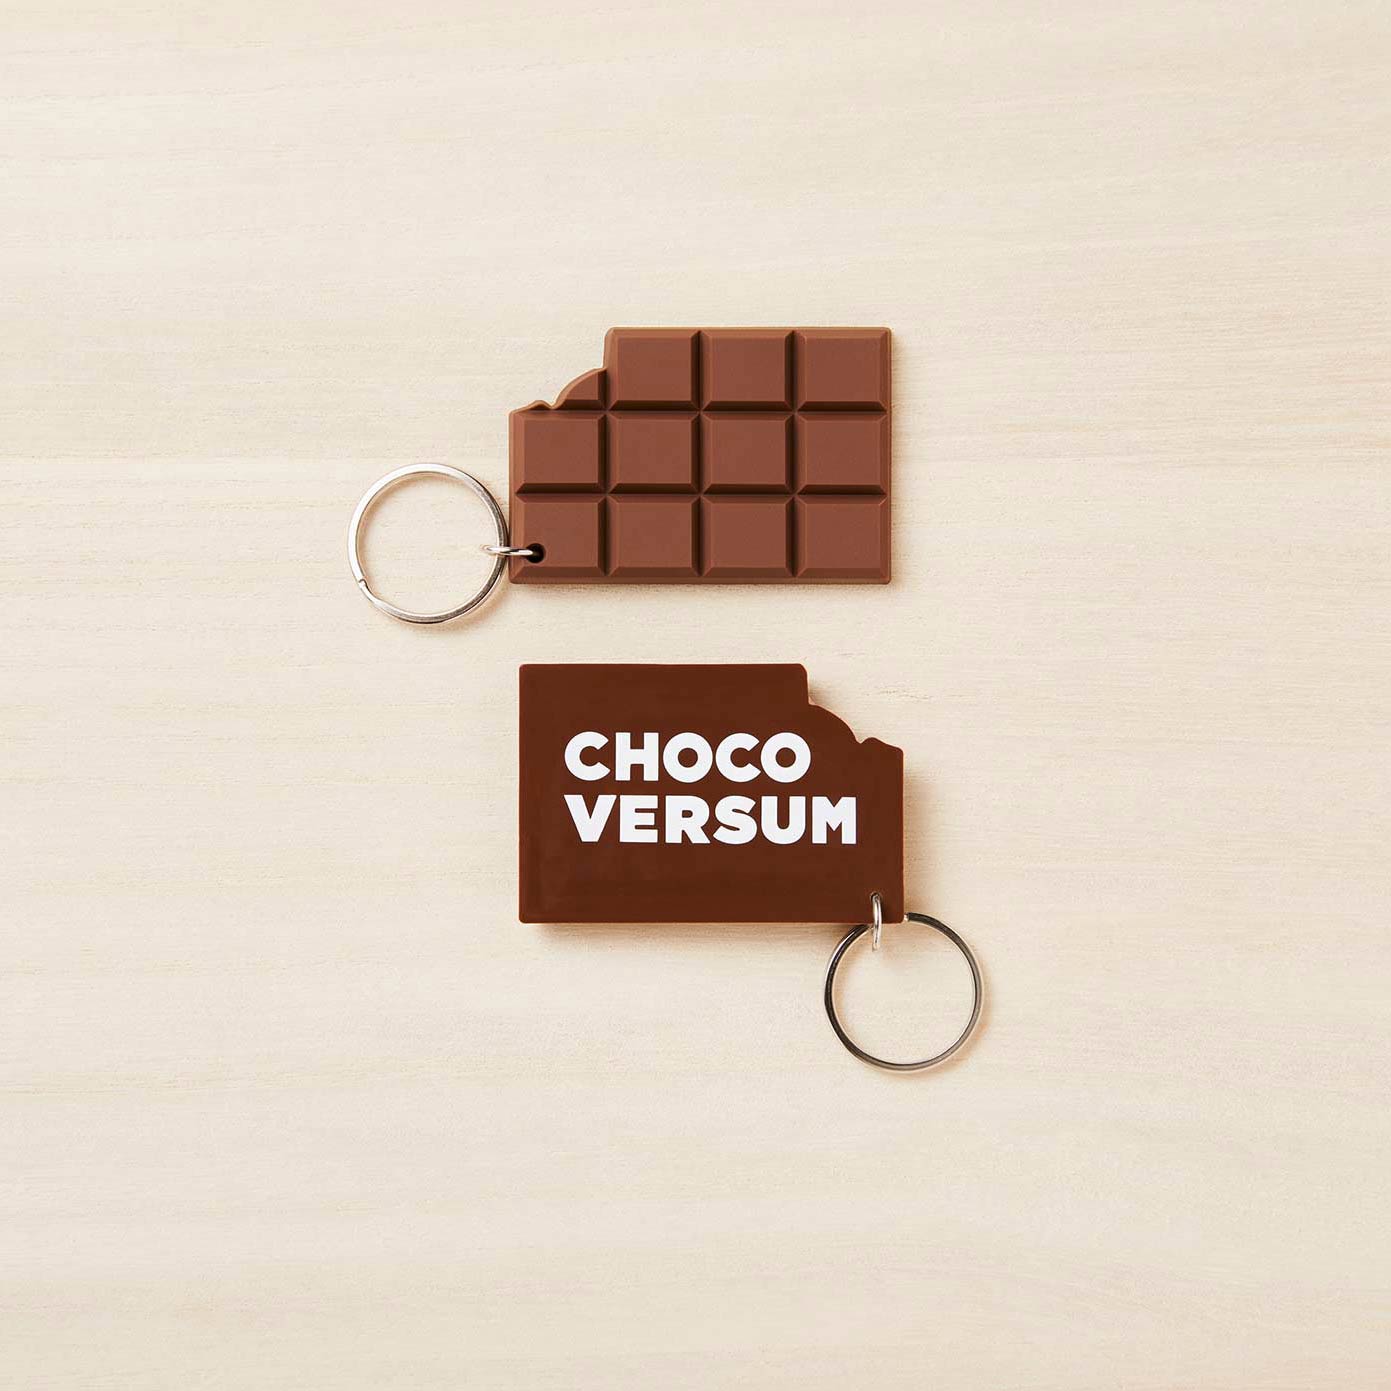 Schlüsselanhänger mit Schriftzug "Chocoversum" in Schokoladen-Tafel-Optik